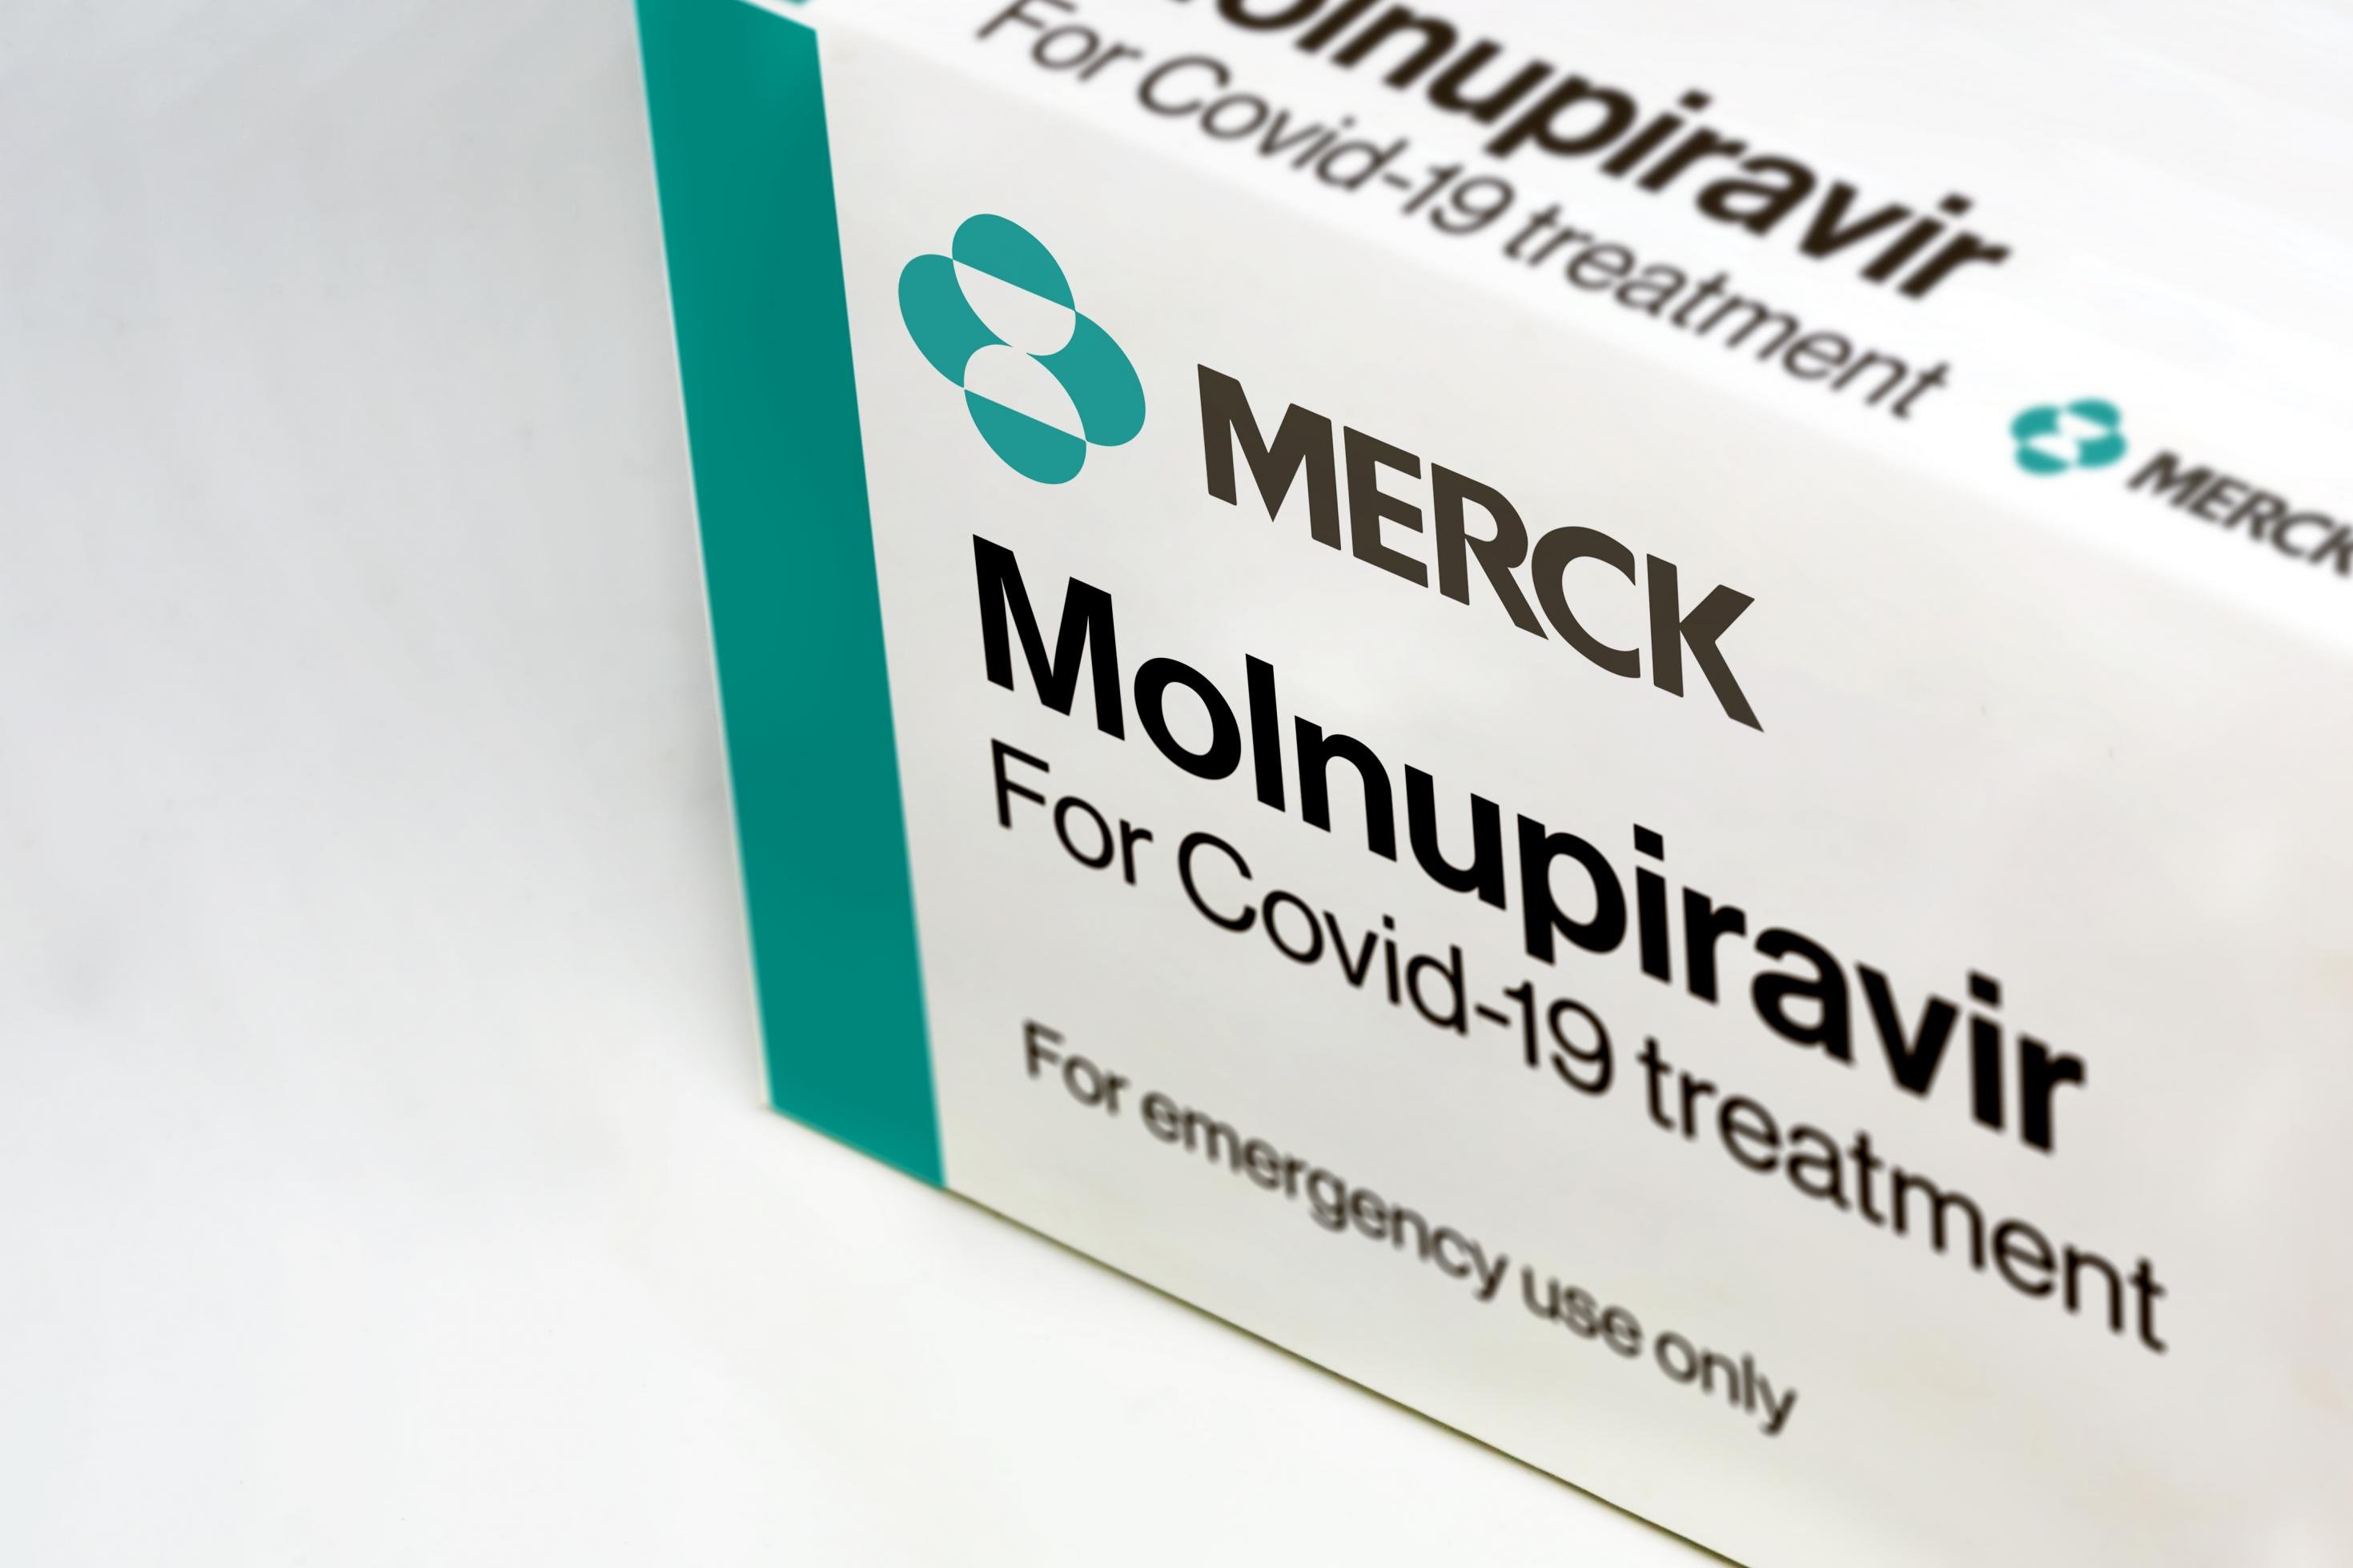 Auf einer weißen Arzneimittel-Schachtel steht Merck Molnupiravir for covid-19 treatment for emergency use only.